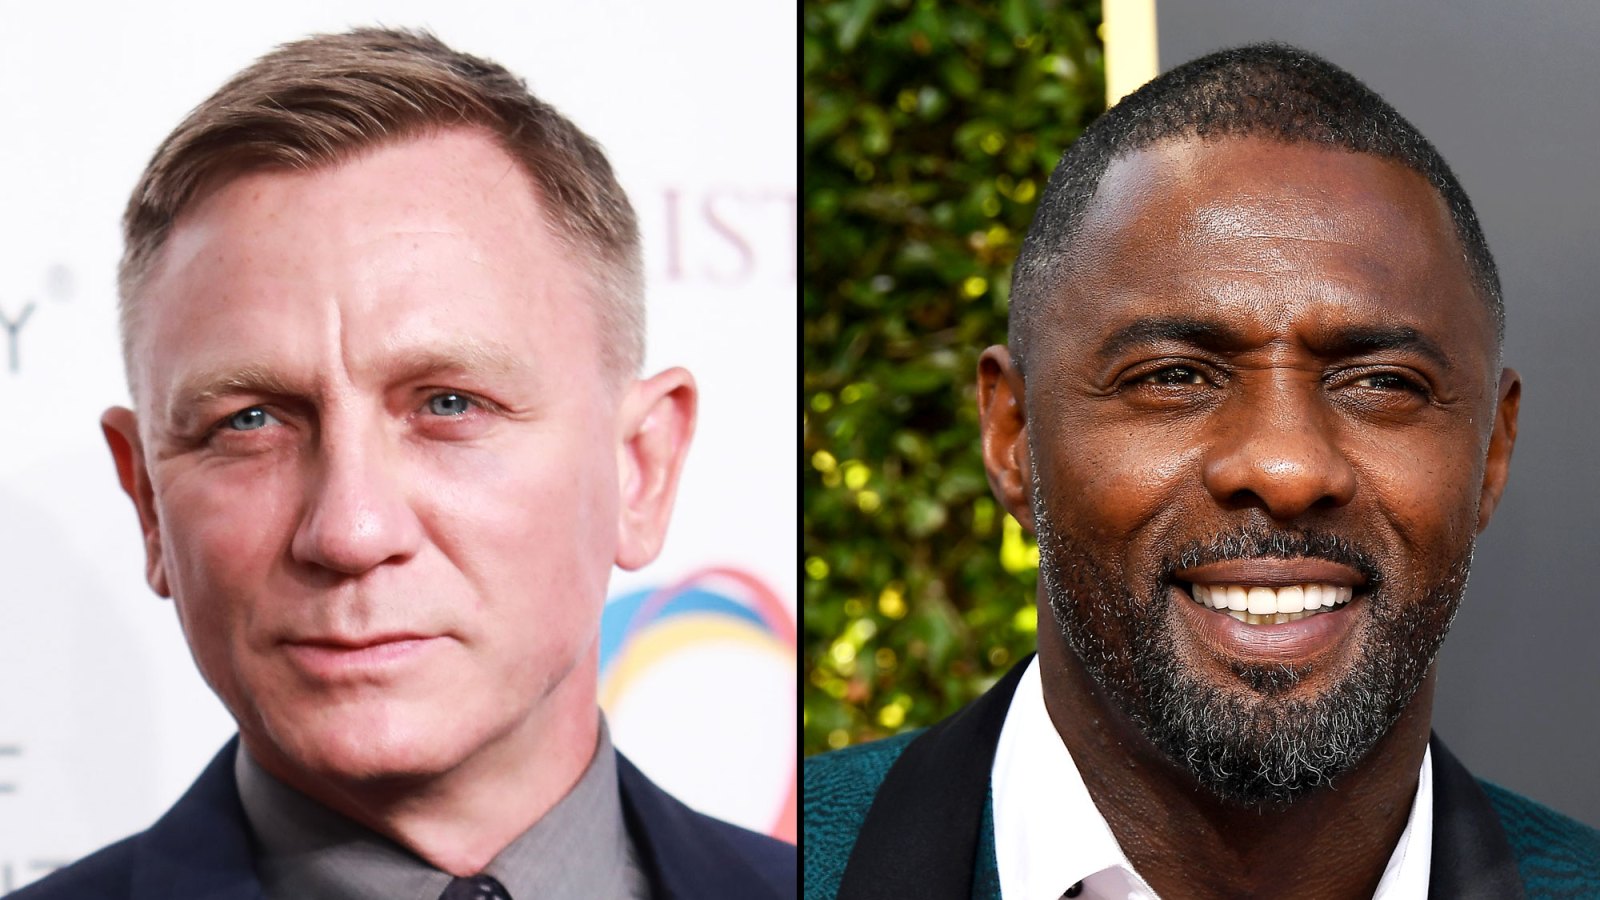 Daniel Craig Meets Potential James Bond Successor Idris Elba at 2019 Golden Globes